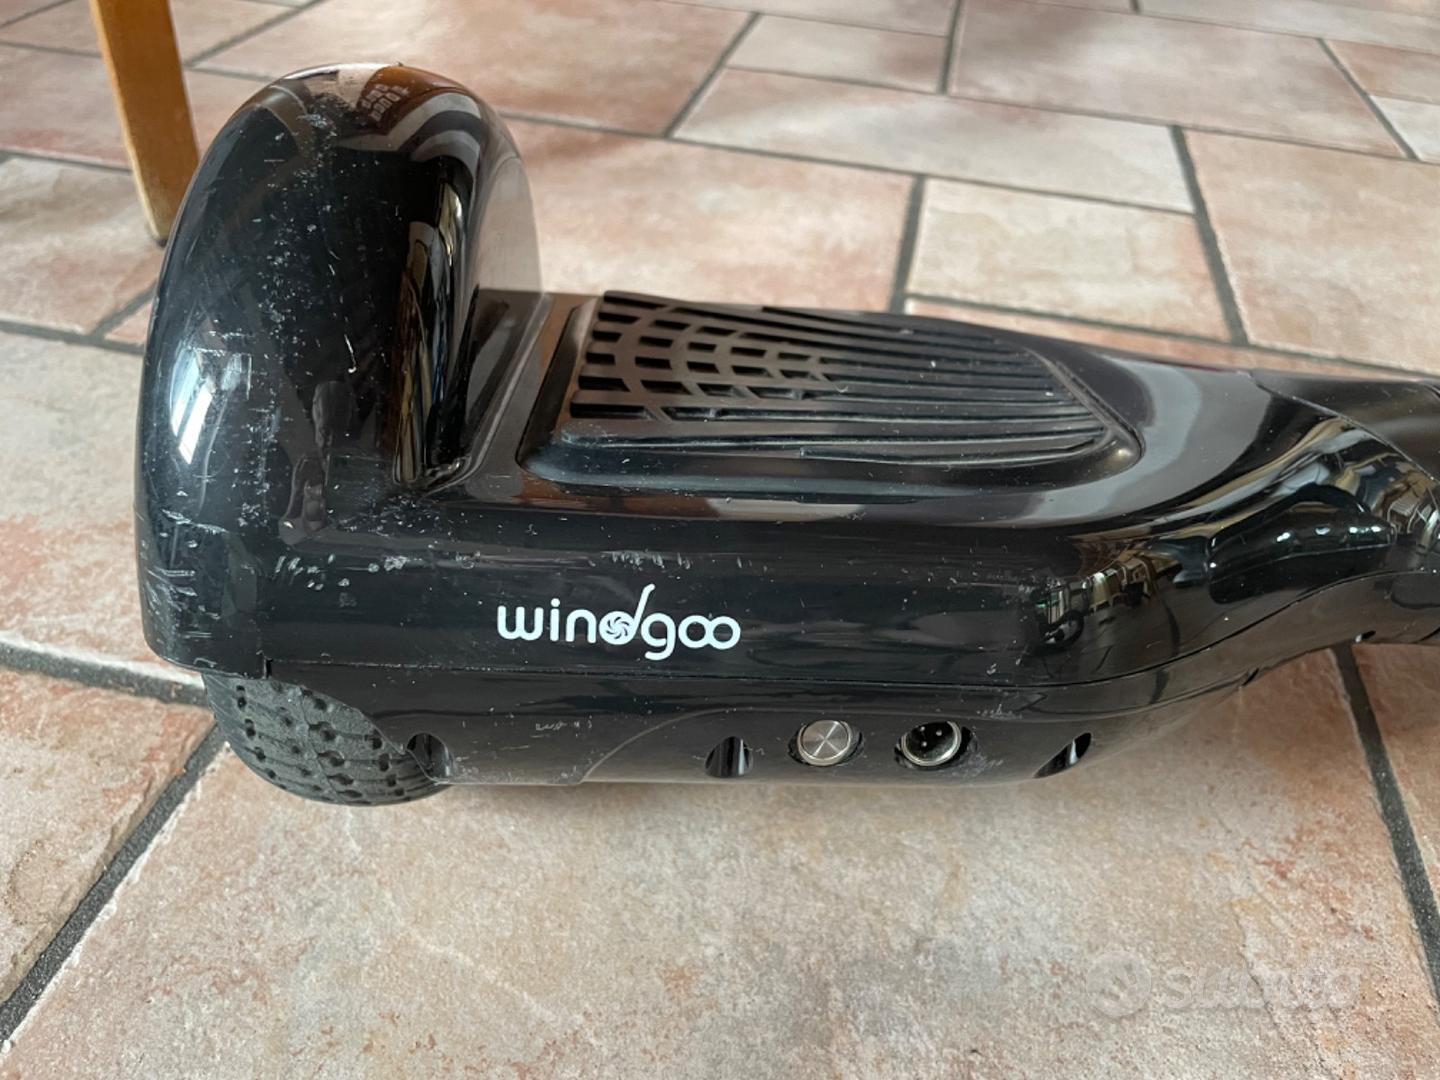 Windgoo N1 Hoverboard review 